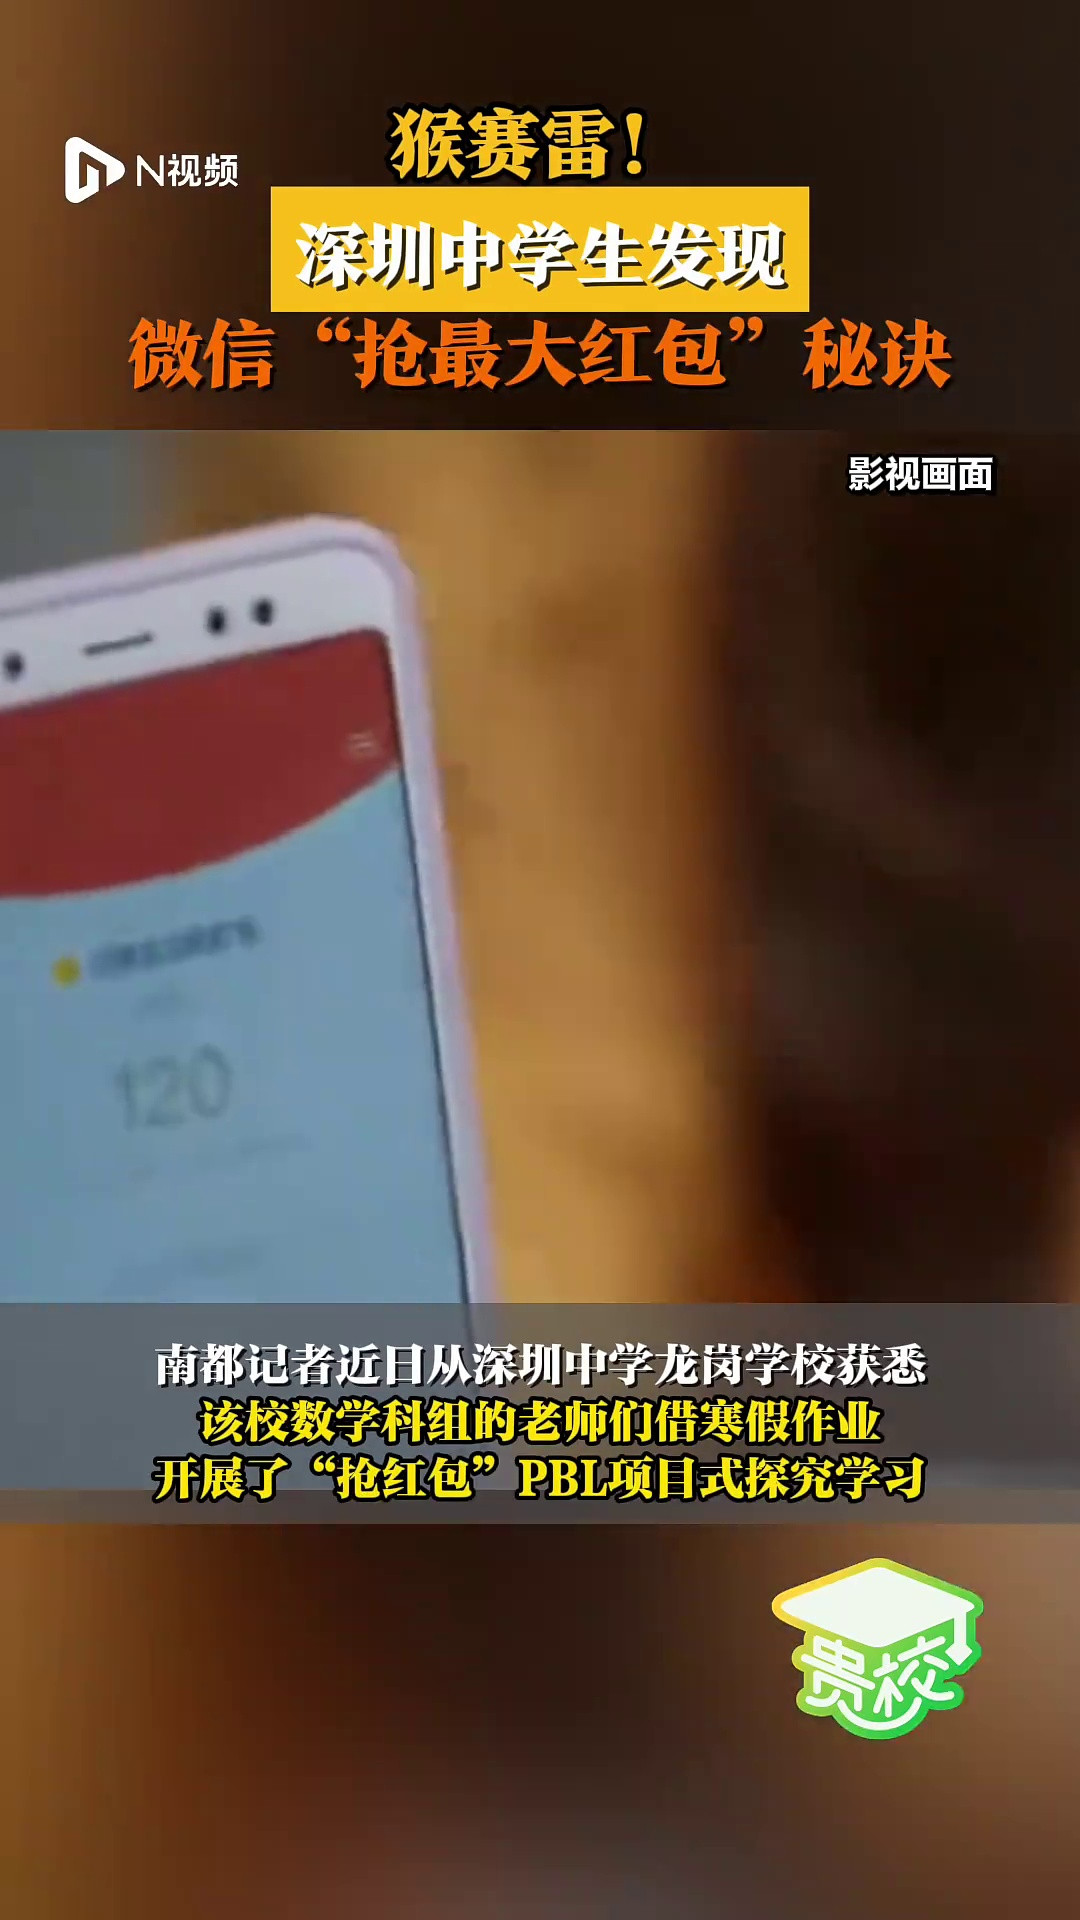 猴赛雷! 深圳中学生发现微信“抢最大红包”秘诀